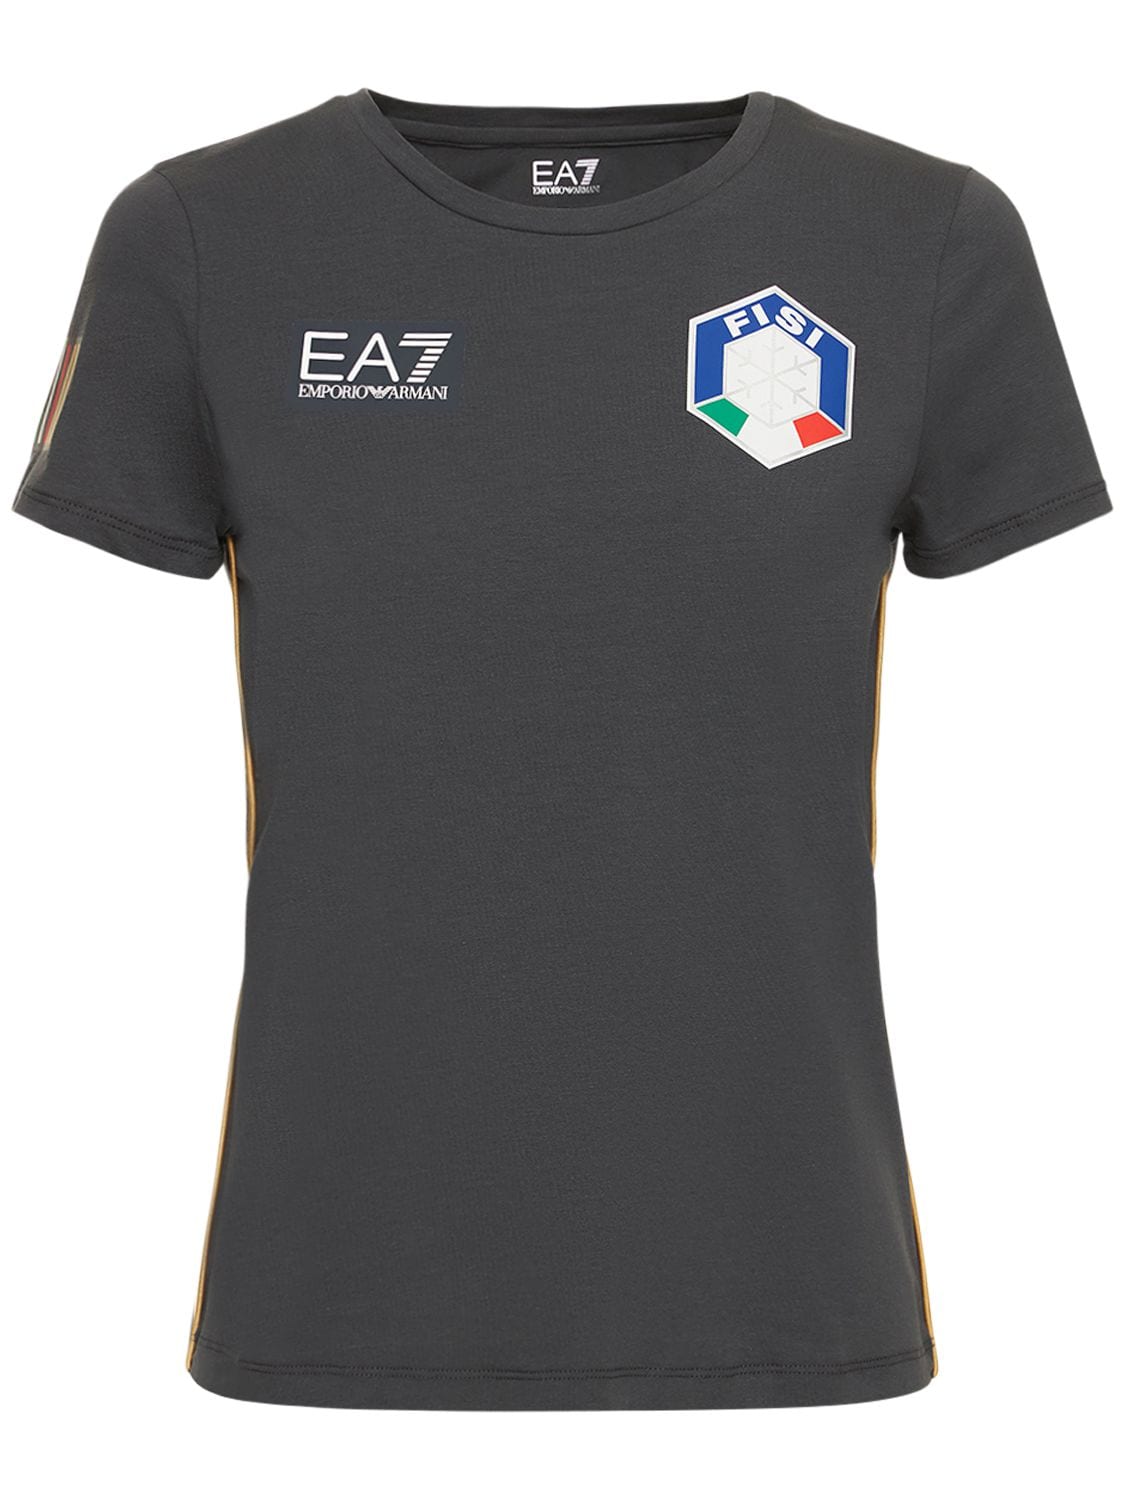 T-shirt Fisi In Jersey Di Cotone Stretch - EA7 EMPORIO ARMANI - Modalova